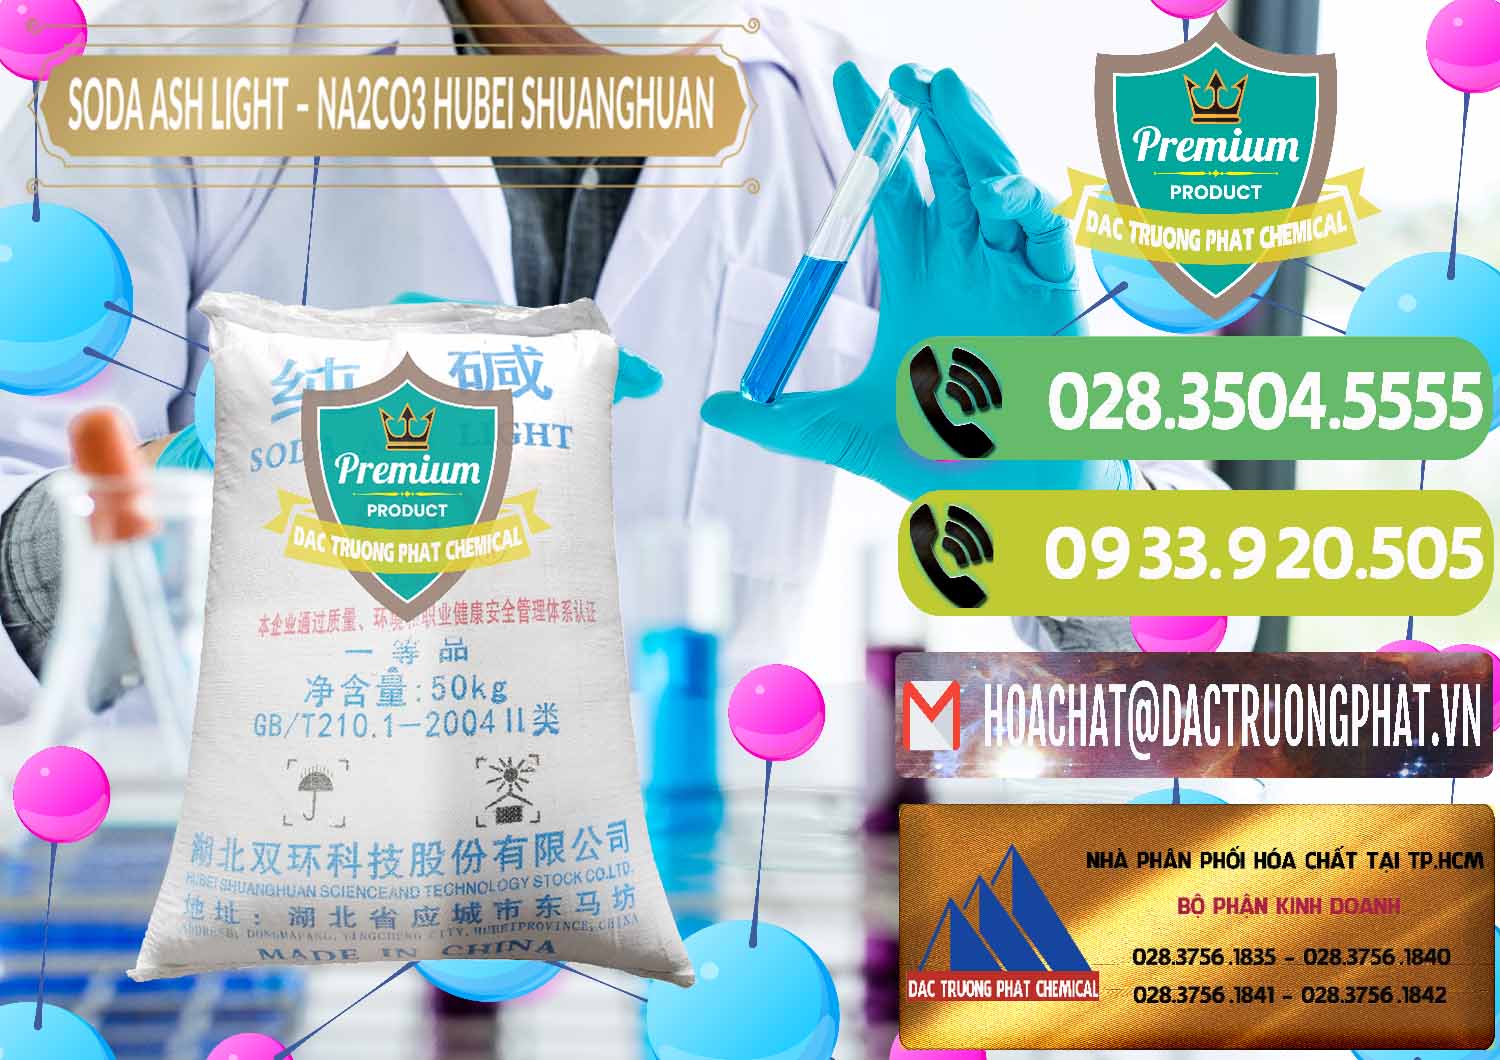 Cty chuyên kinh doanh và bán Soda Ash Light - NA2CO3 2 Vòng Tròn Hubei Shuanghuan Trung Quốc China - 0130 - Đơn vị bán & cung cấp hóa chất tại TP.HCM - hoachatmientay.vn